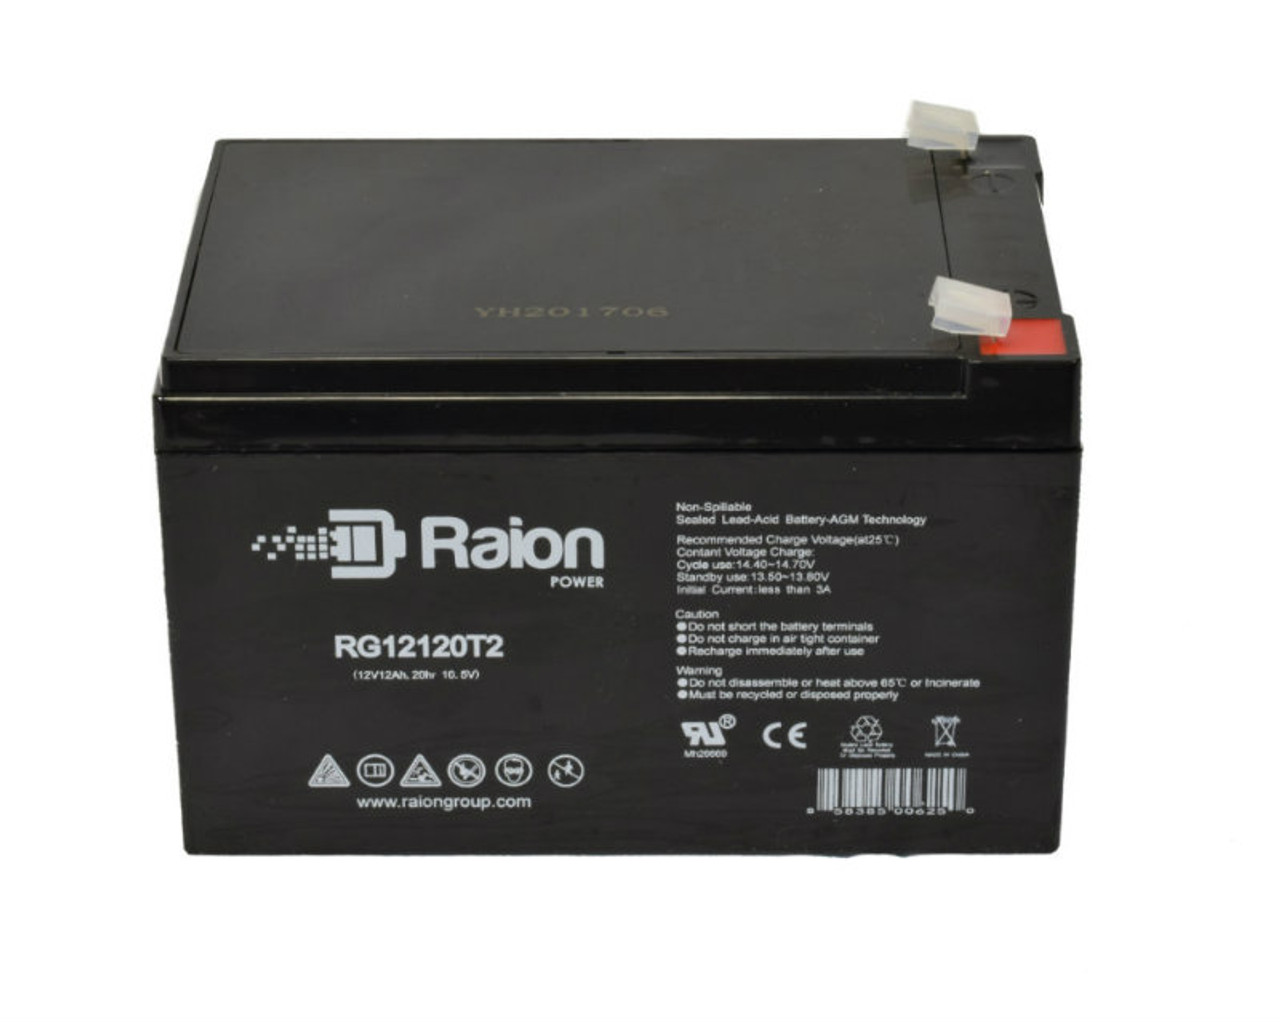 Raion Power RG12120T2 SLA Battery for Gaston GT12-14C